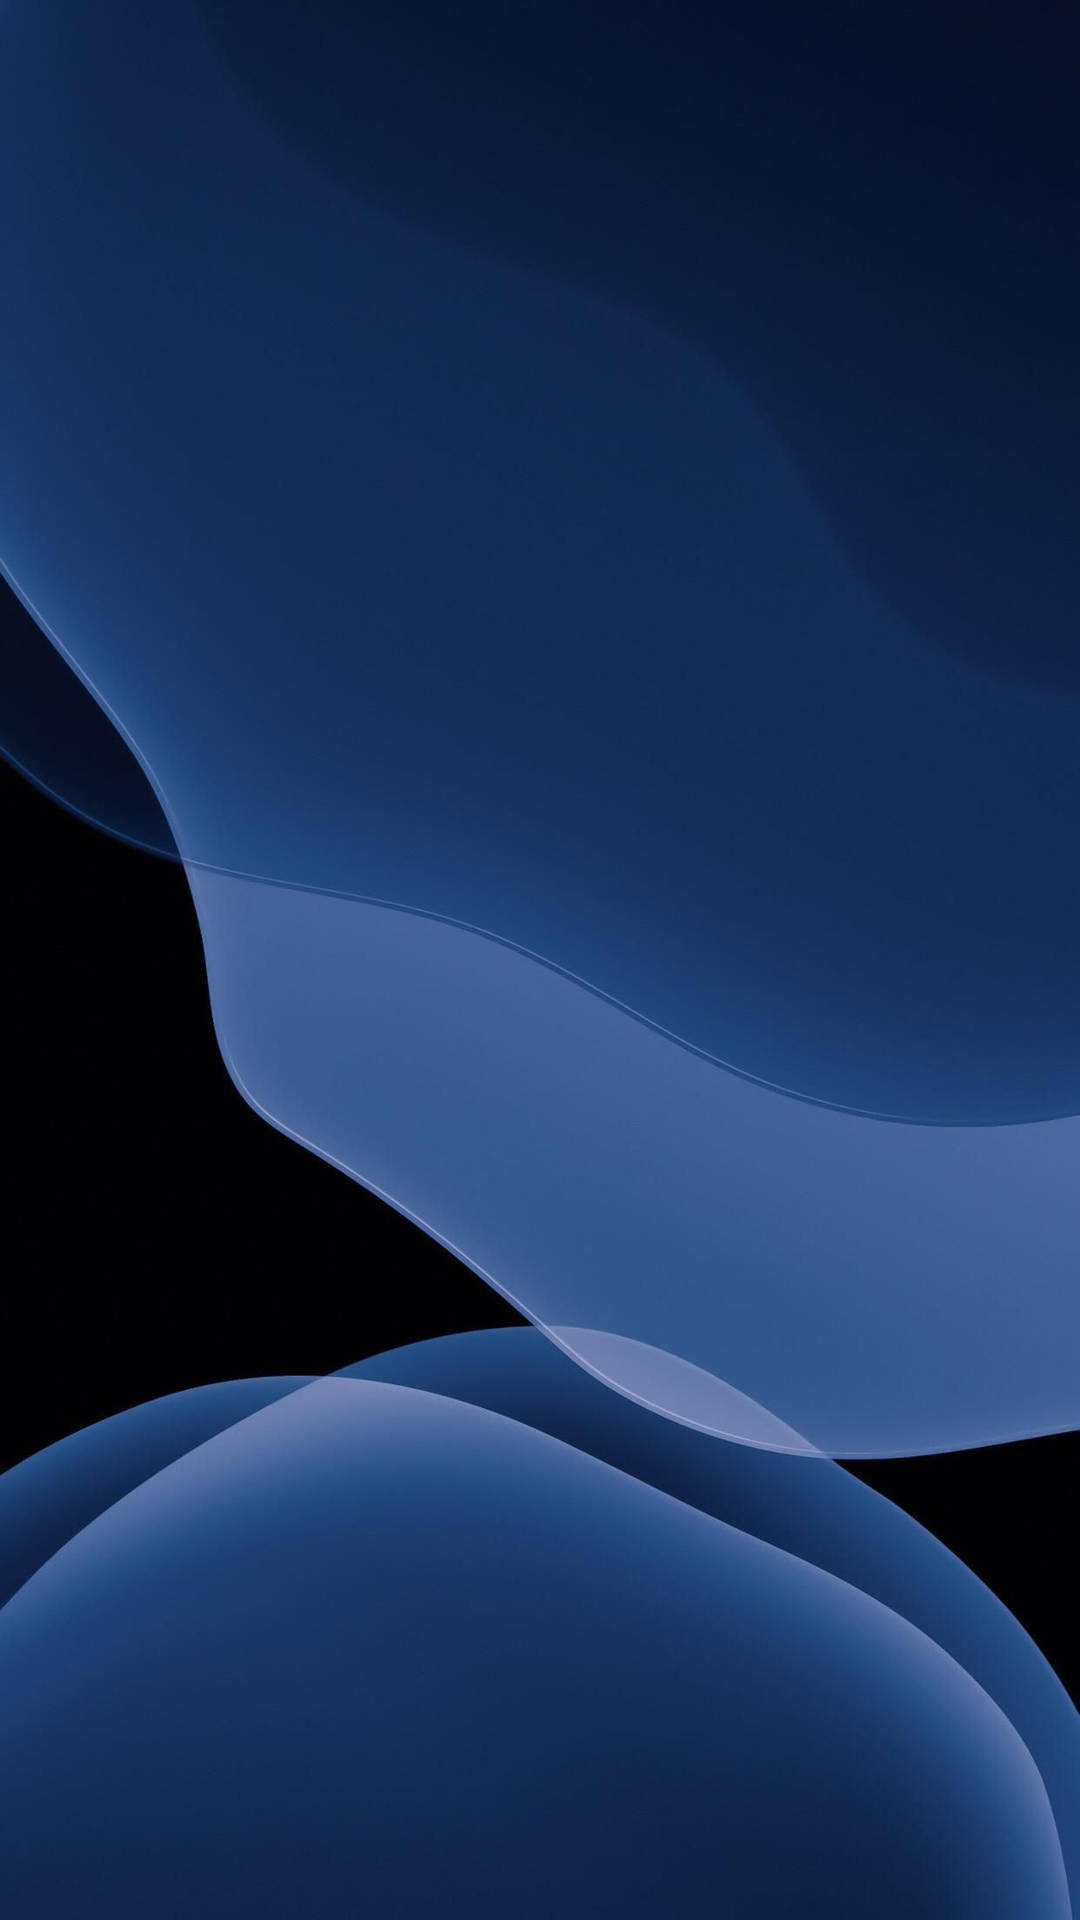 Cùng chiêm ngưỡng thiết kế tuyệt đẹp của chiếc iPhone 13 trên nền màu xanh, tạo nên một sự kết hợp hoàn hảo giữa ngoại hình và gam màu đầy cuốn hút. Đừng bỏ lỡ cơ hội để ngắm nhìn chi tiết của chiếc điện thoại đẳng cấp này trên nền nếu màu xanh đầy đặn!